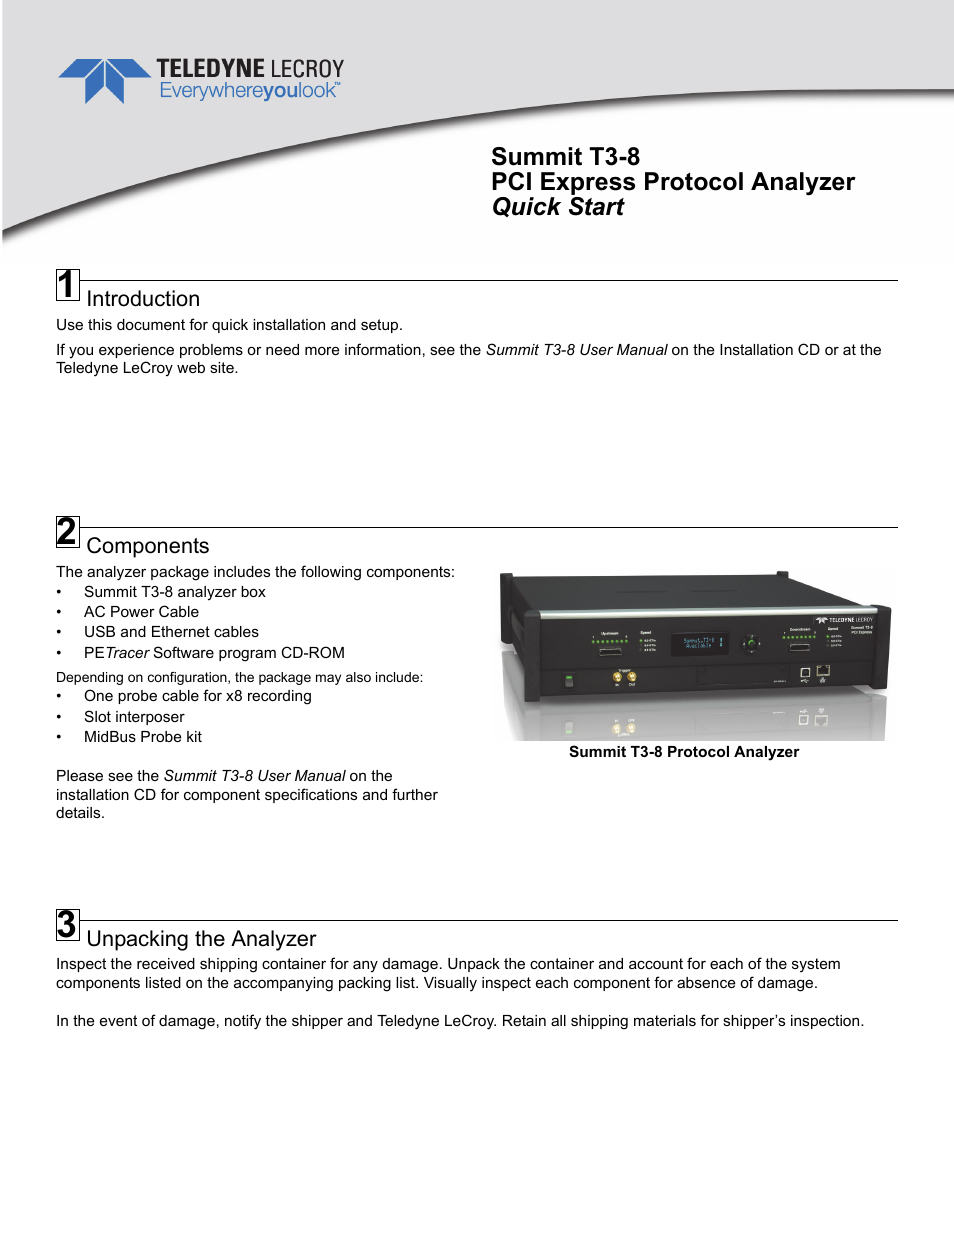 Summit T3-8 PCI Express Protocol Analyzer